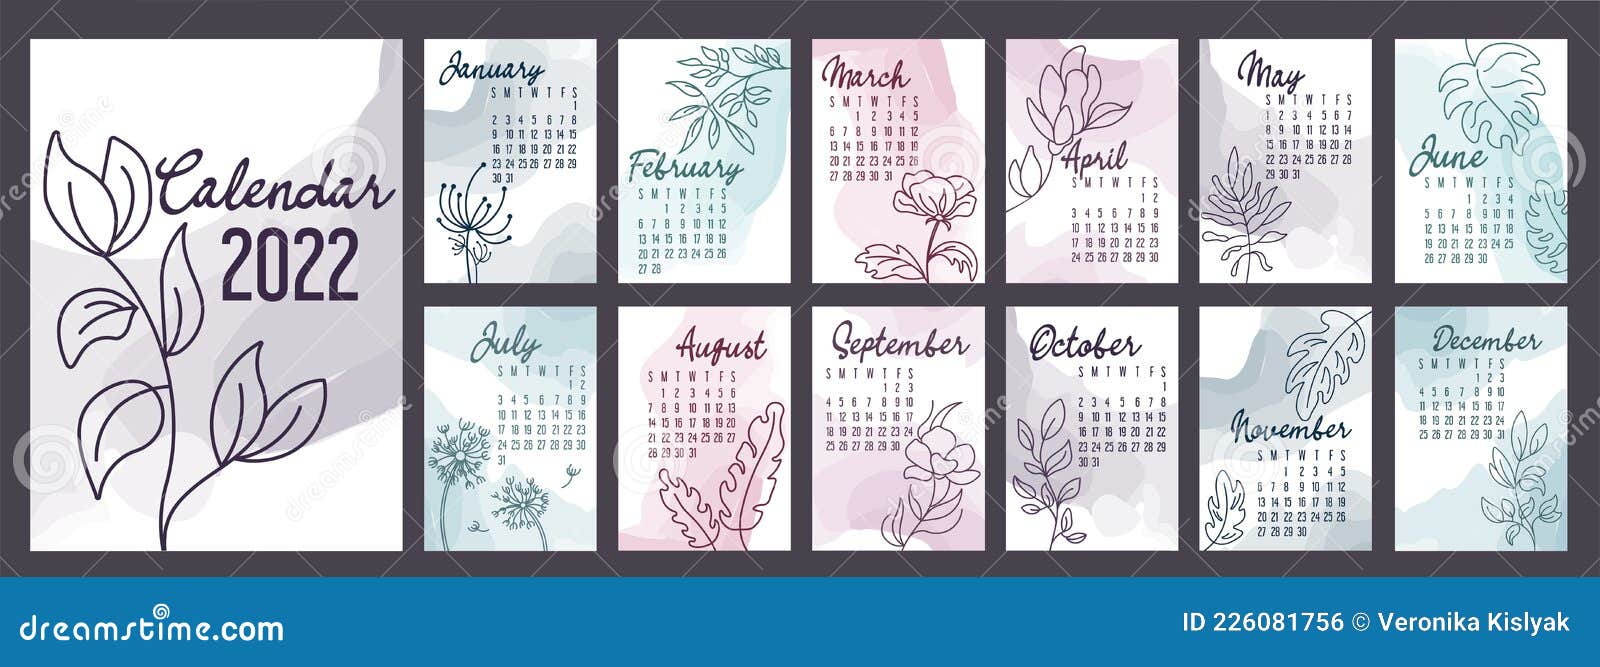 Реферат: Календарь Конта